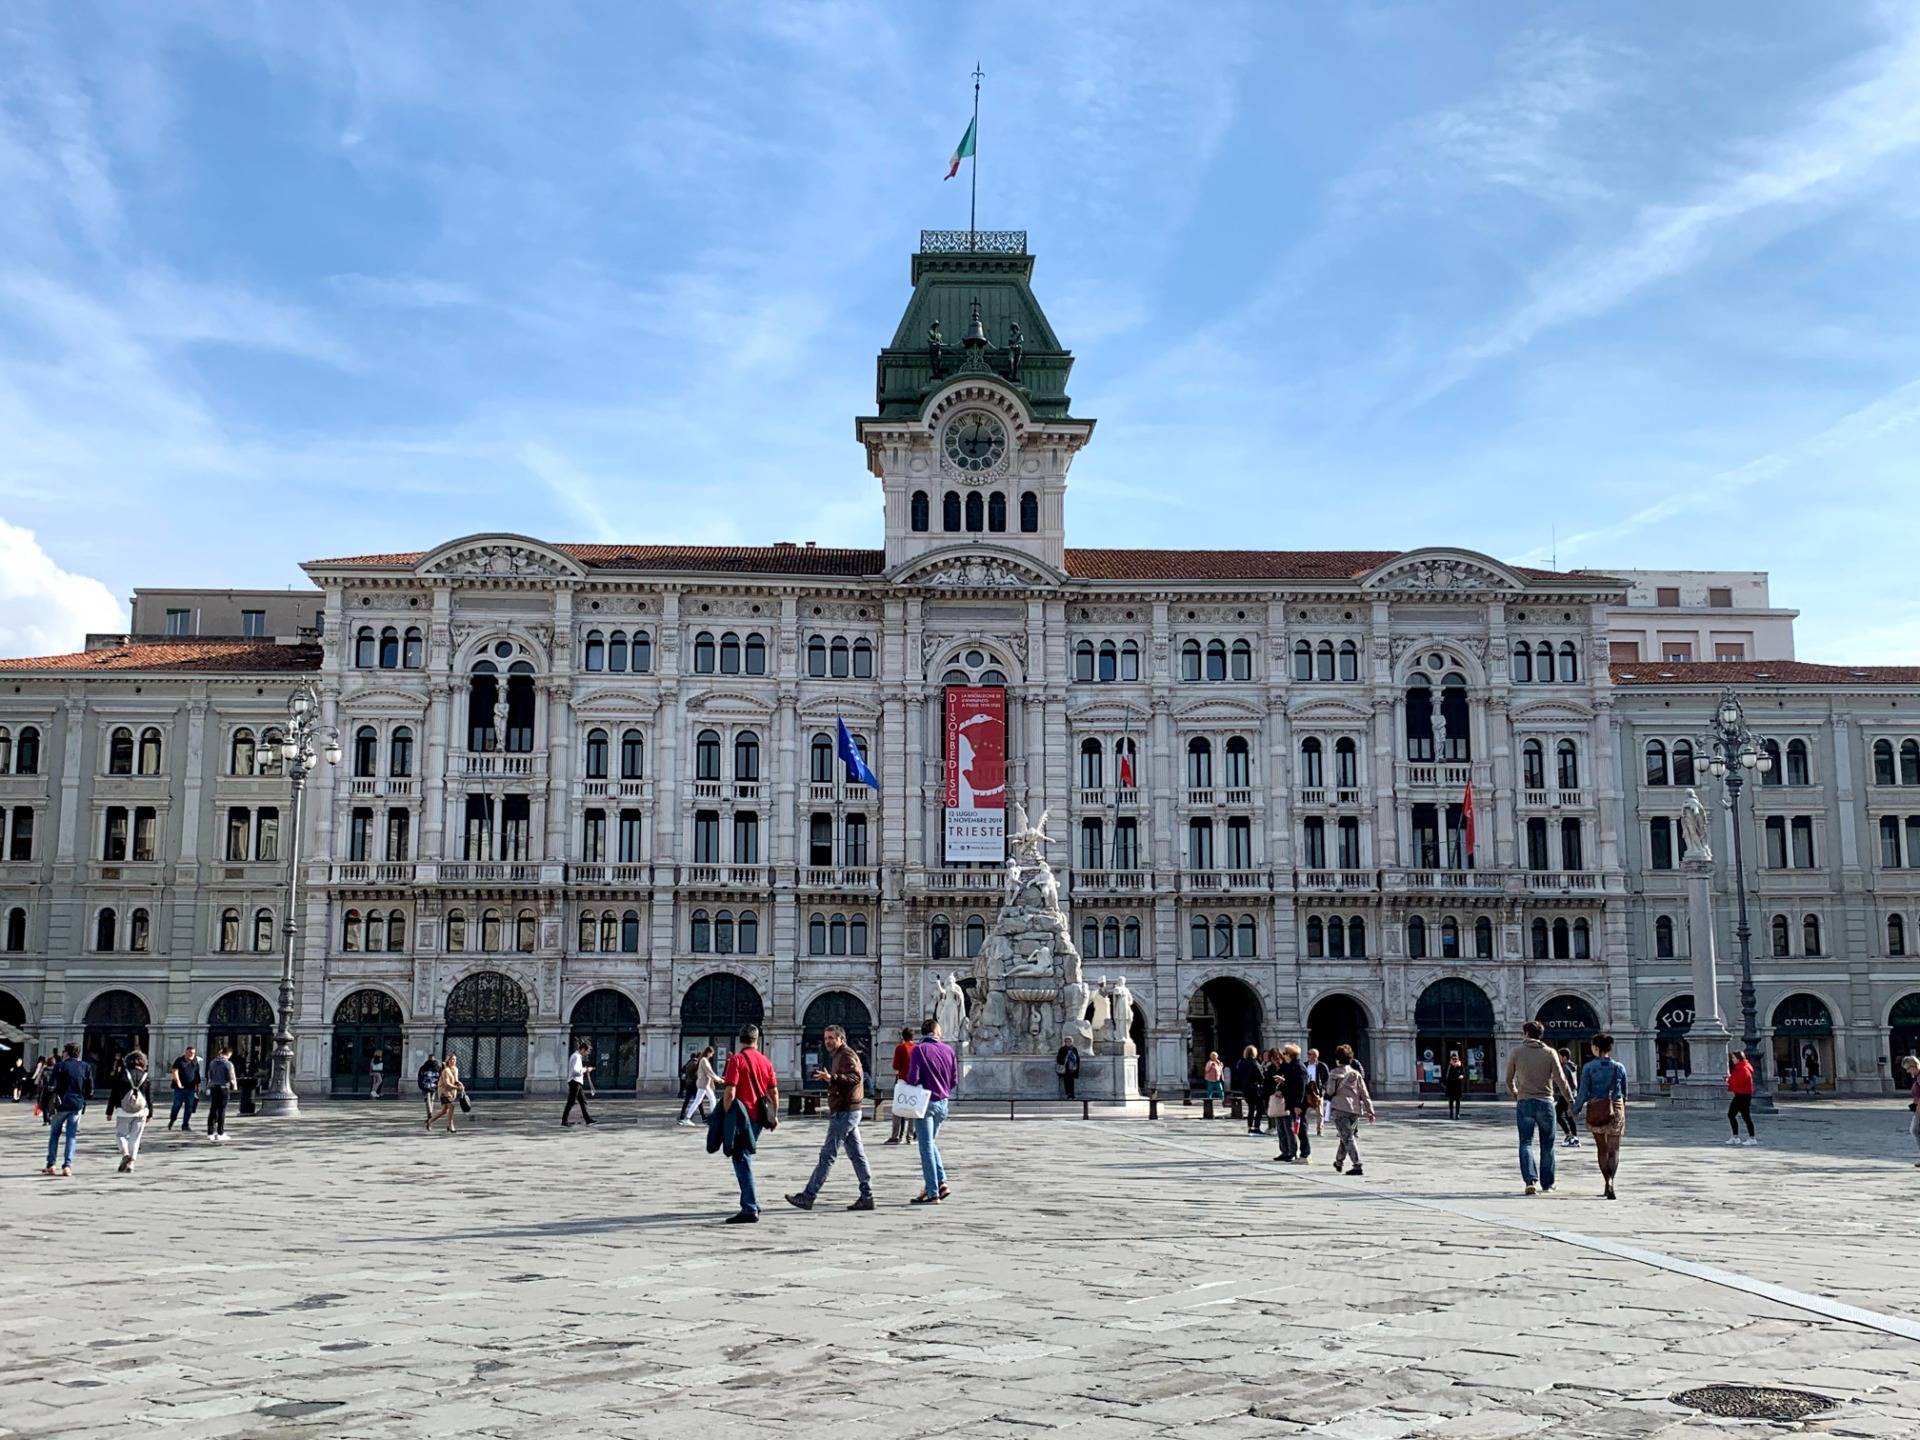 City Hall of Trieste